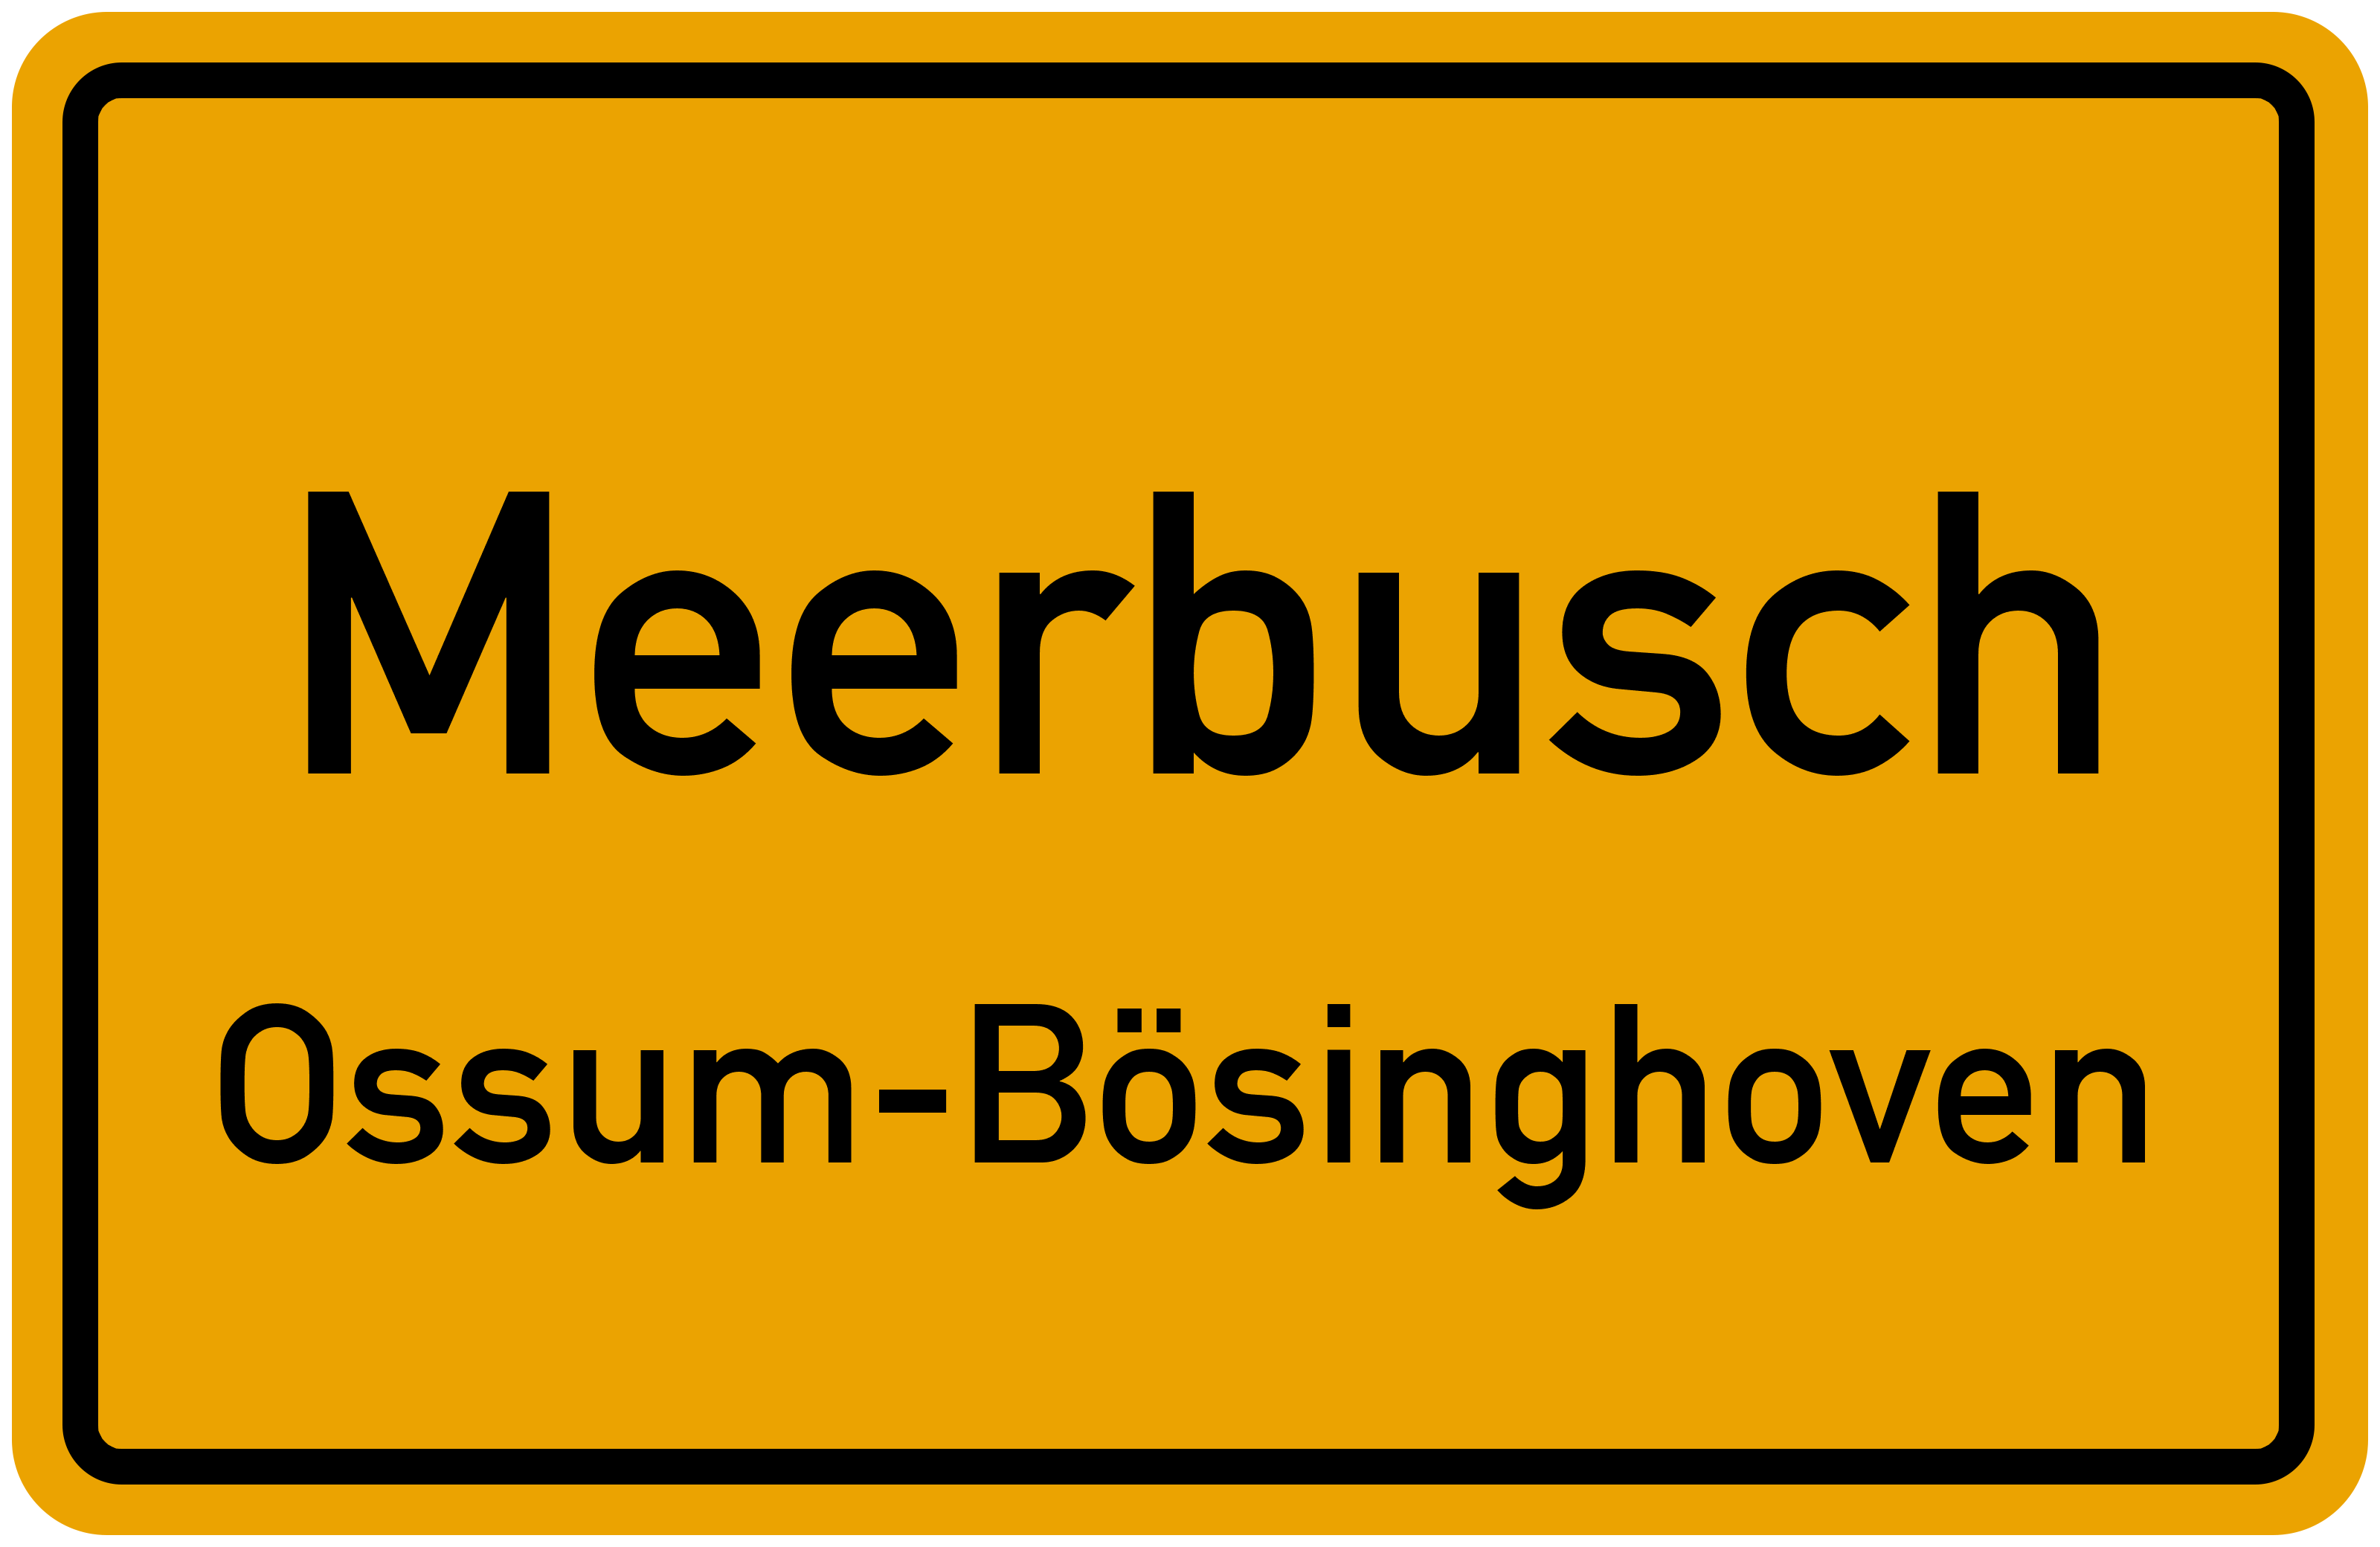 Ortsschild Meerbusch-Ossum-Bösinghoven kostenlos: Download & Drucken